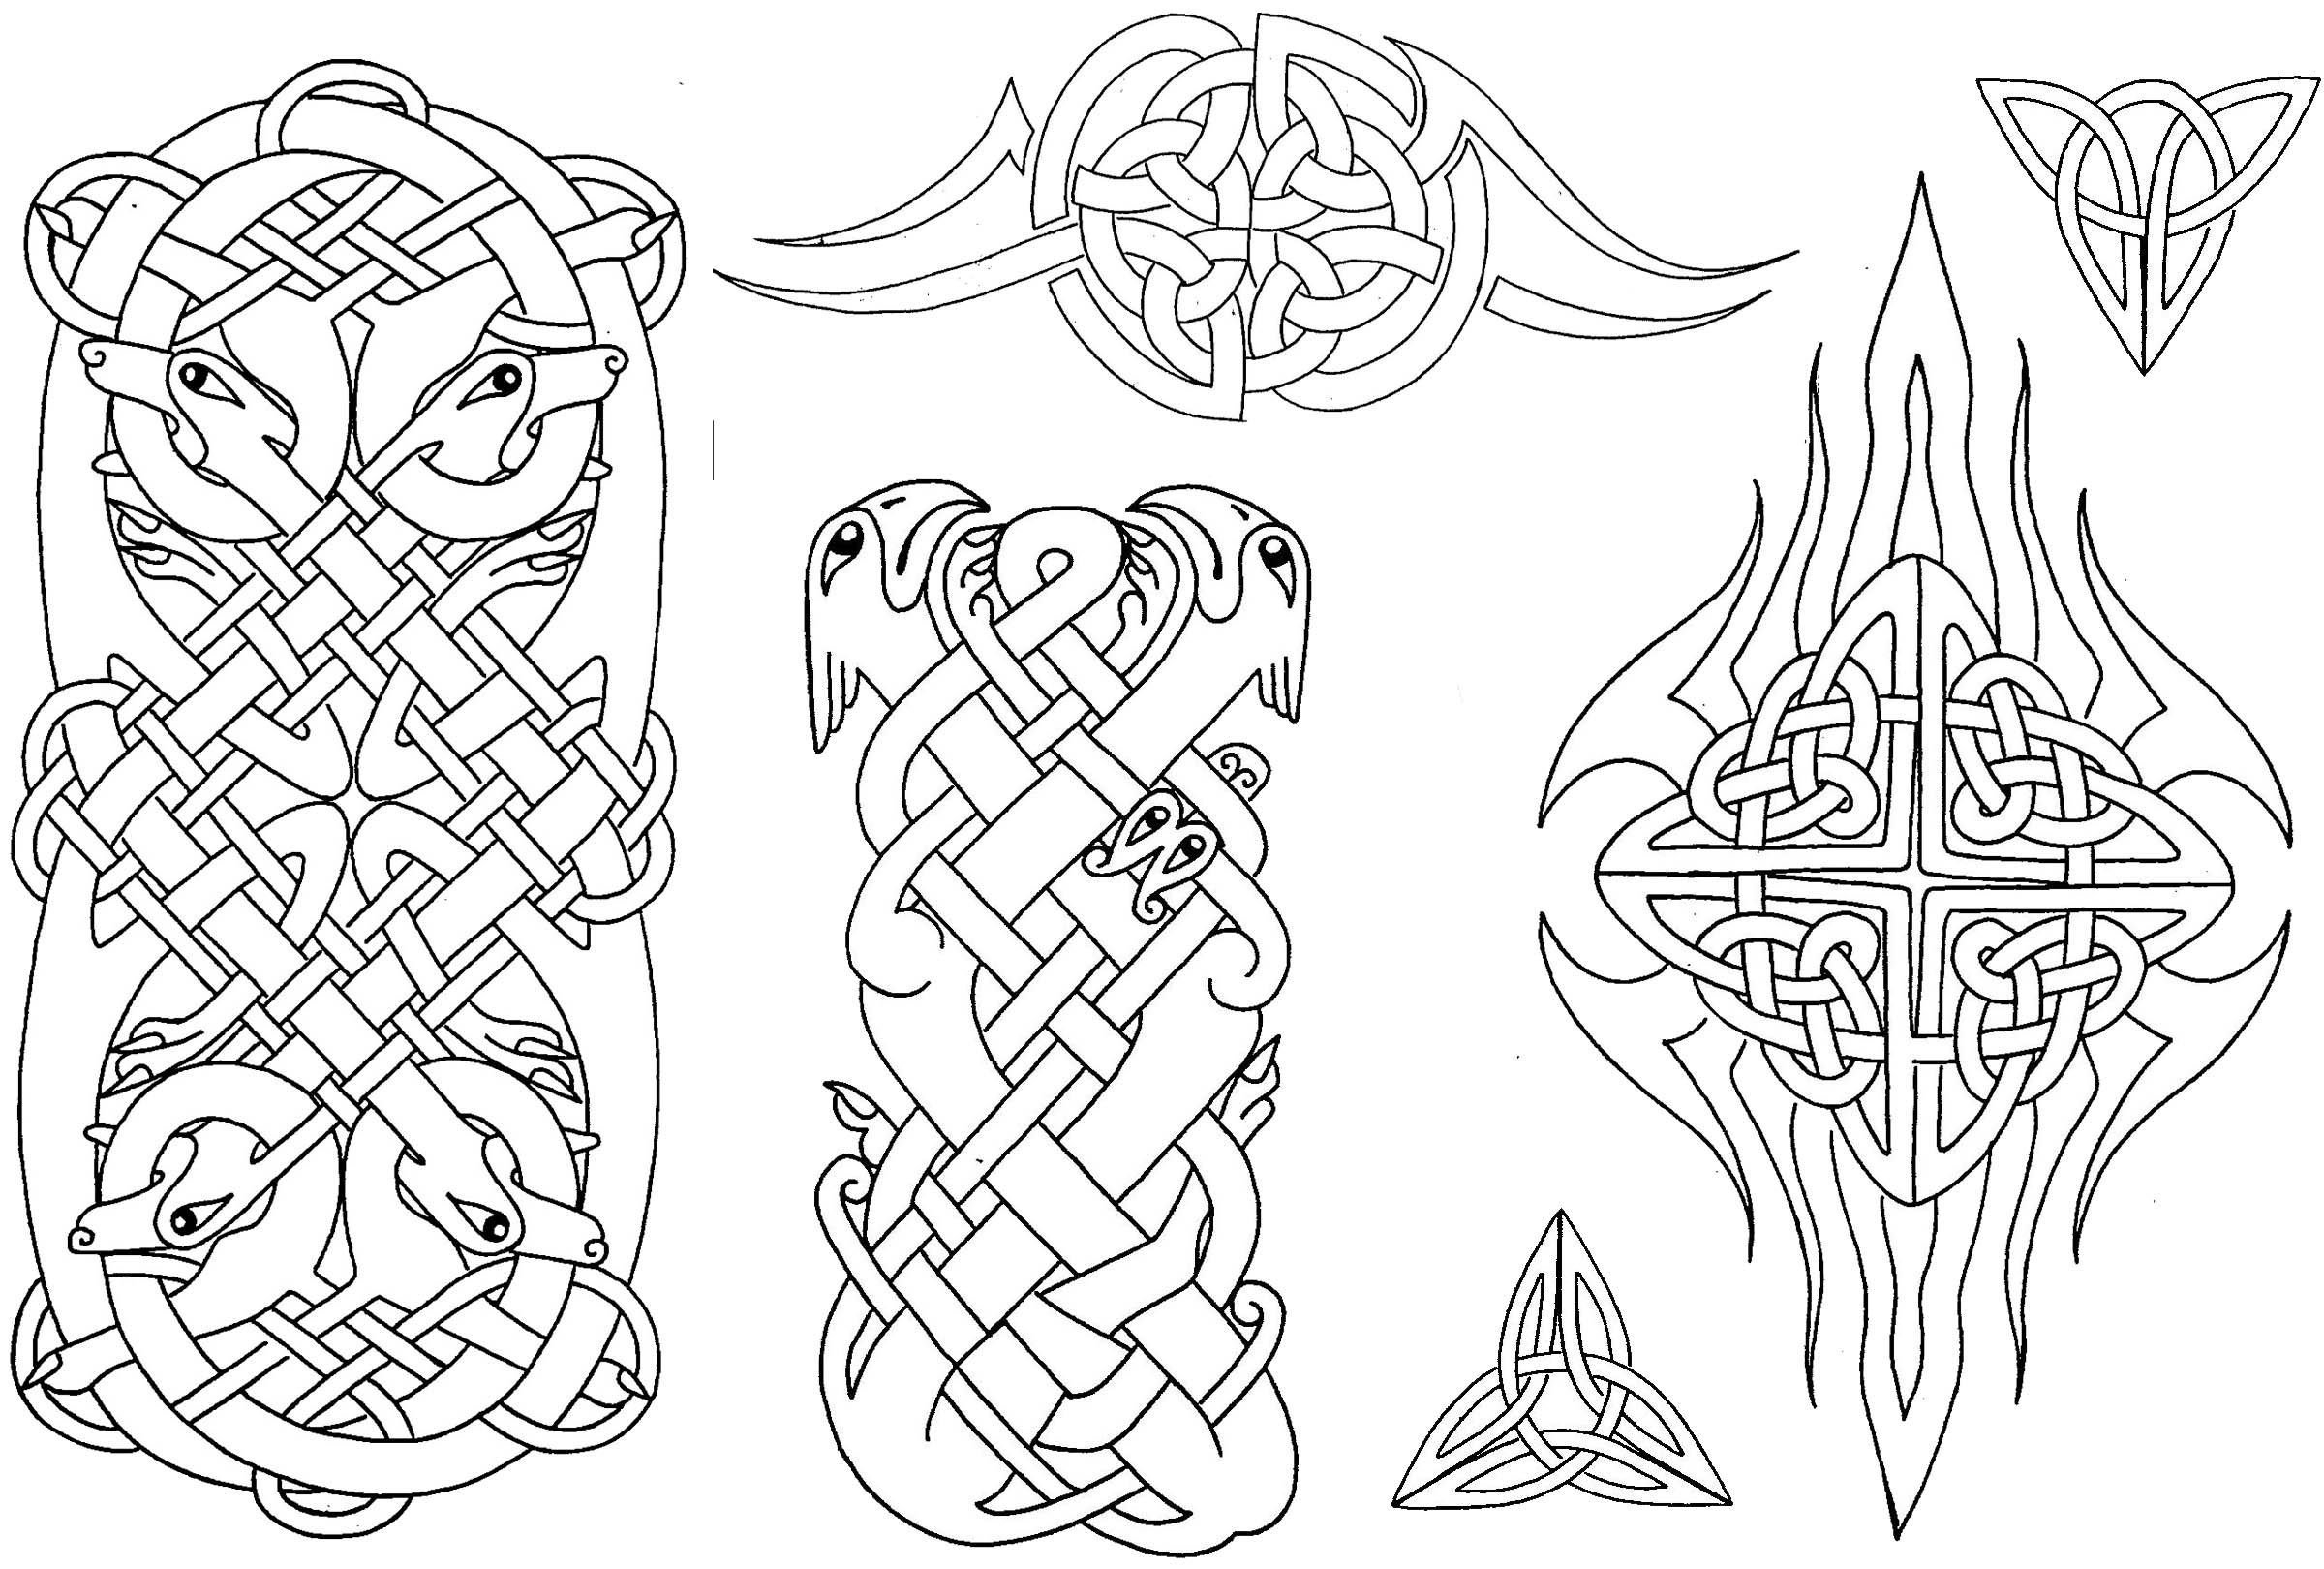 Кельтский стиль татуировки. Значение тату Кельтские узоры. Celtic tattoo